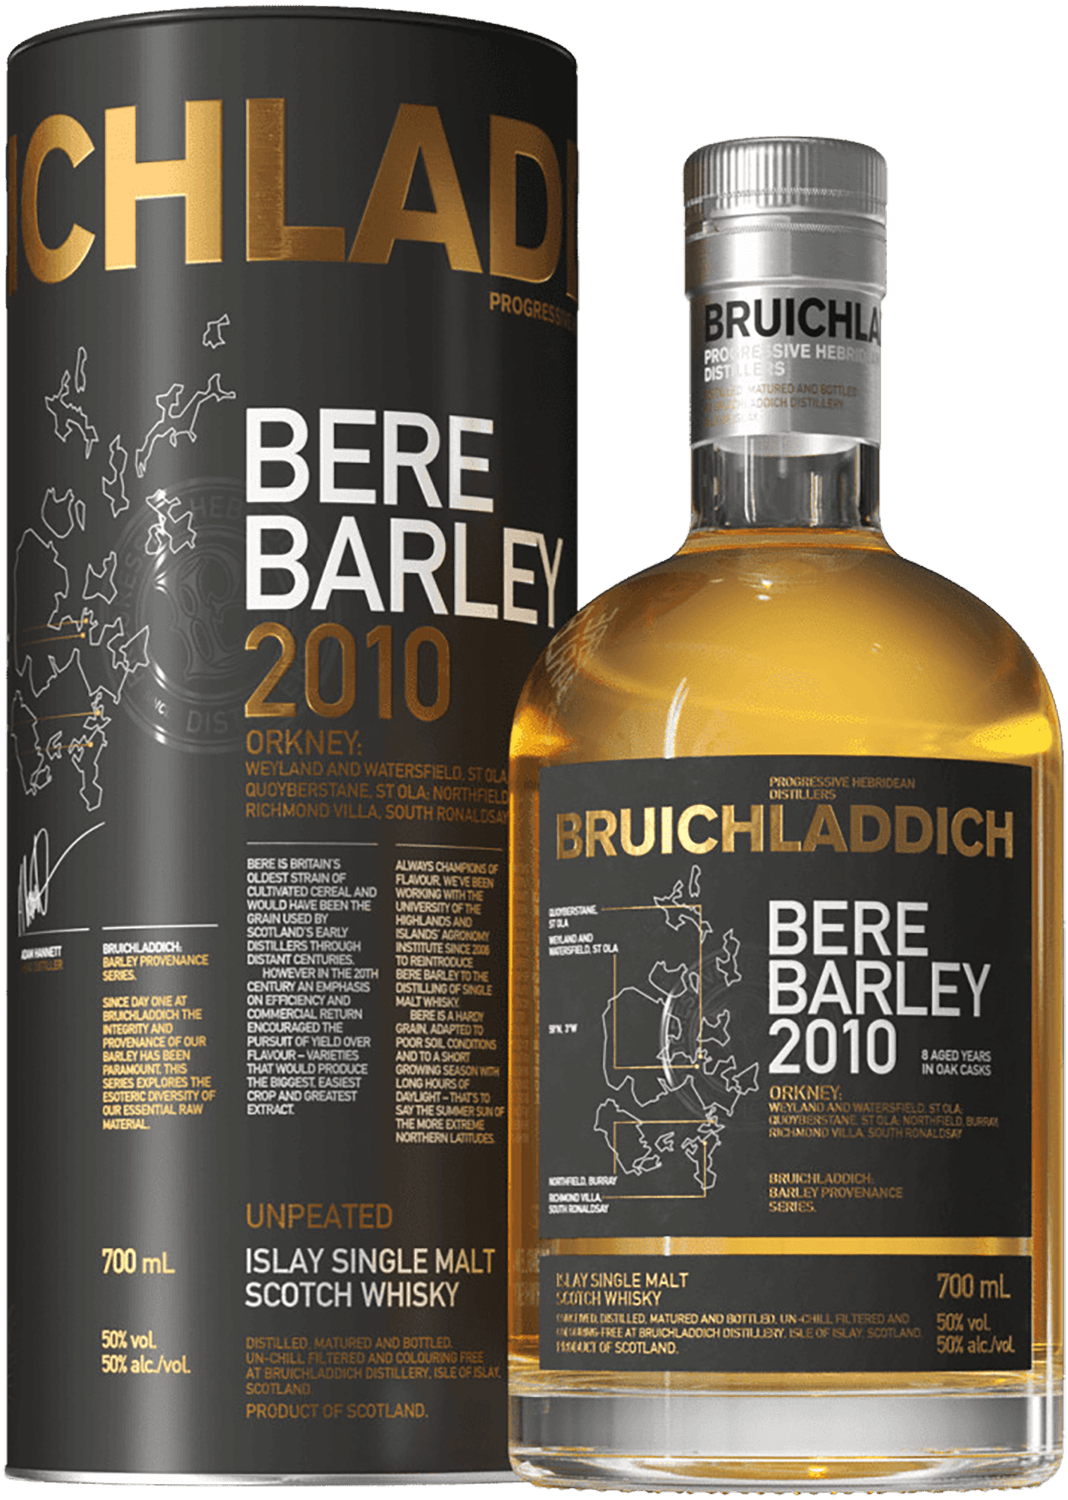 Bruichladdich Bere Barley Islay single malt scotch whisky (gift box) bowmore 15 y o islay single malt scotch whisky gift box